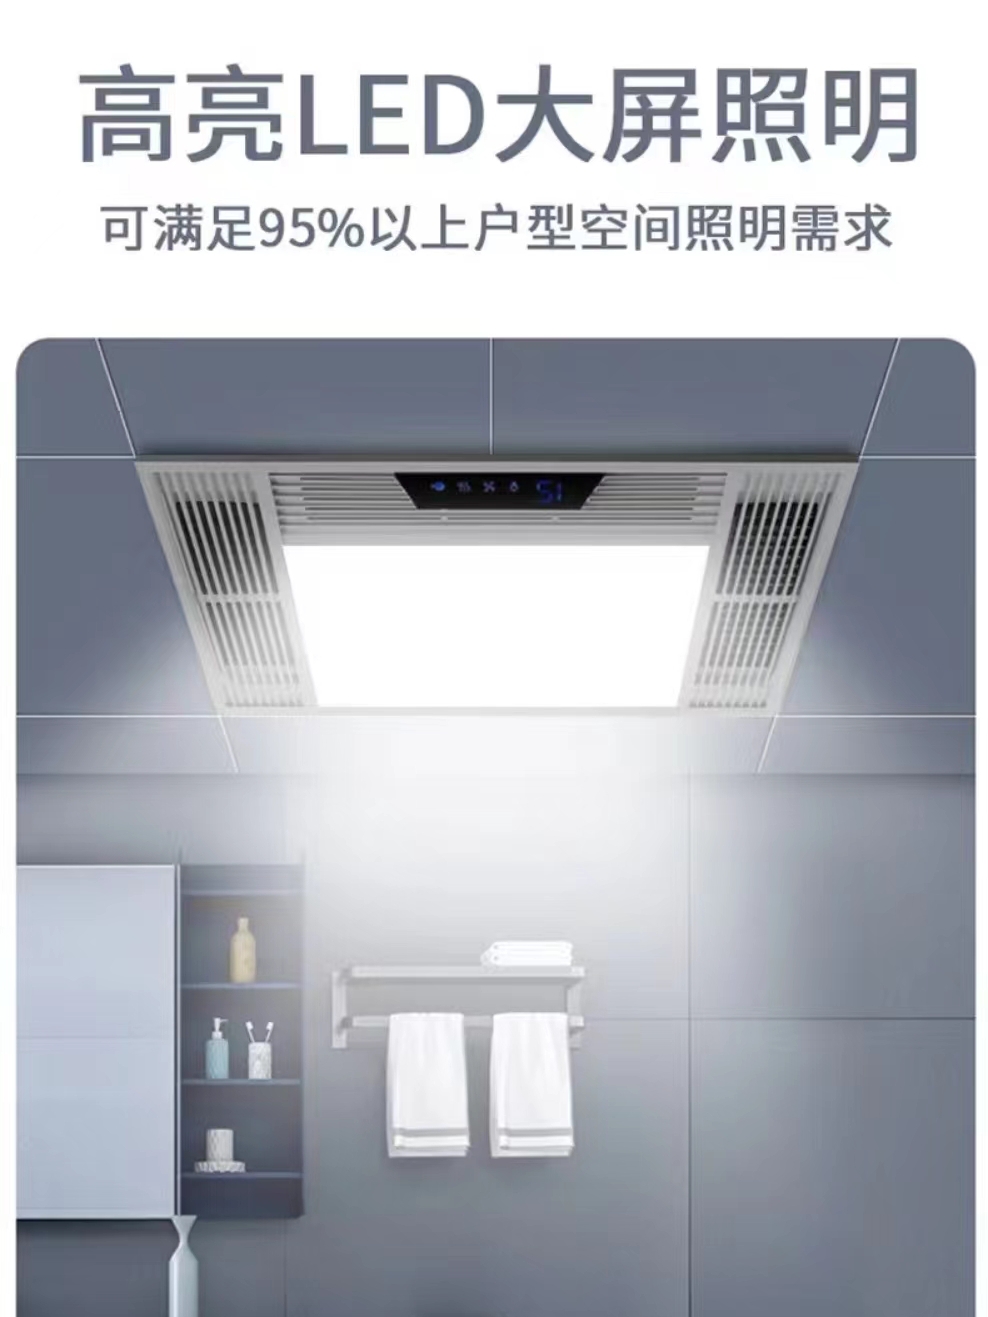 好太太风暖浴霸集成吊顶五合一浴室卫生间排气扇照明一体式暖风机 - 图2